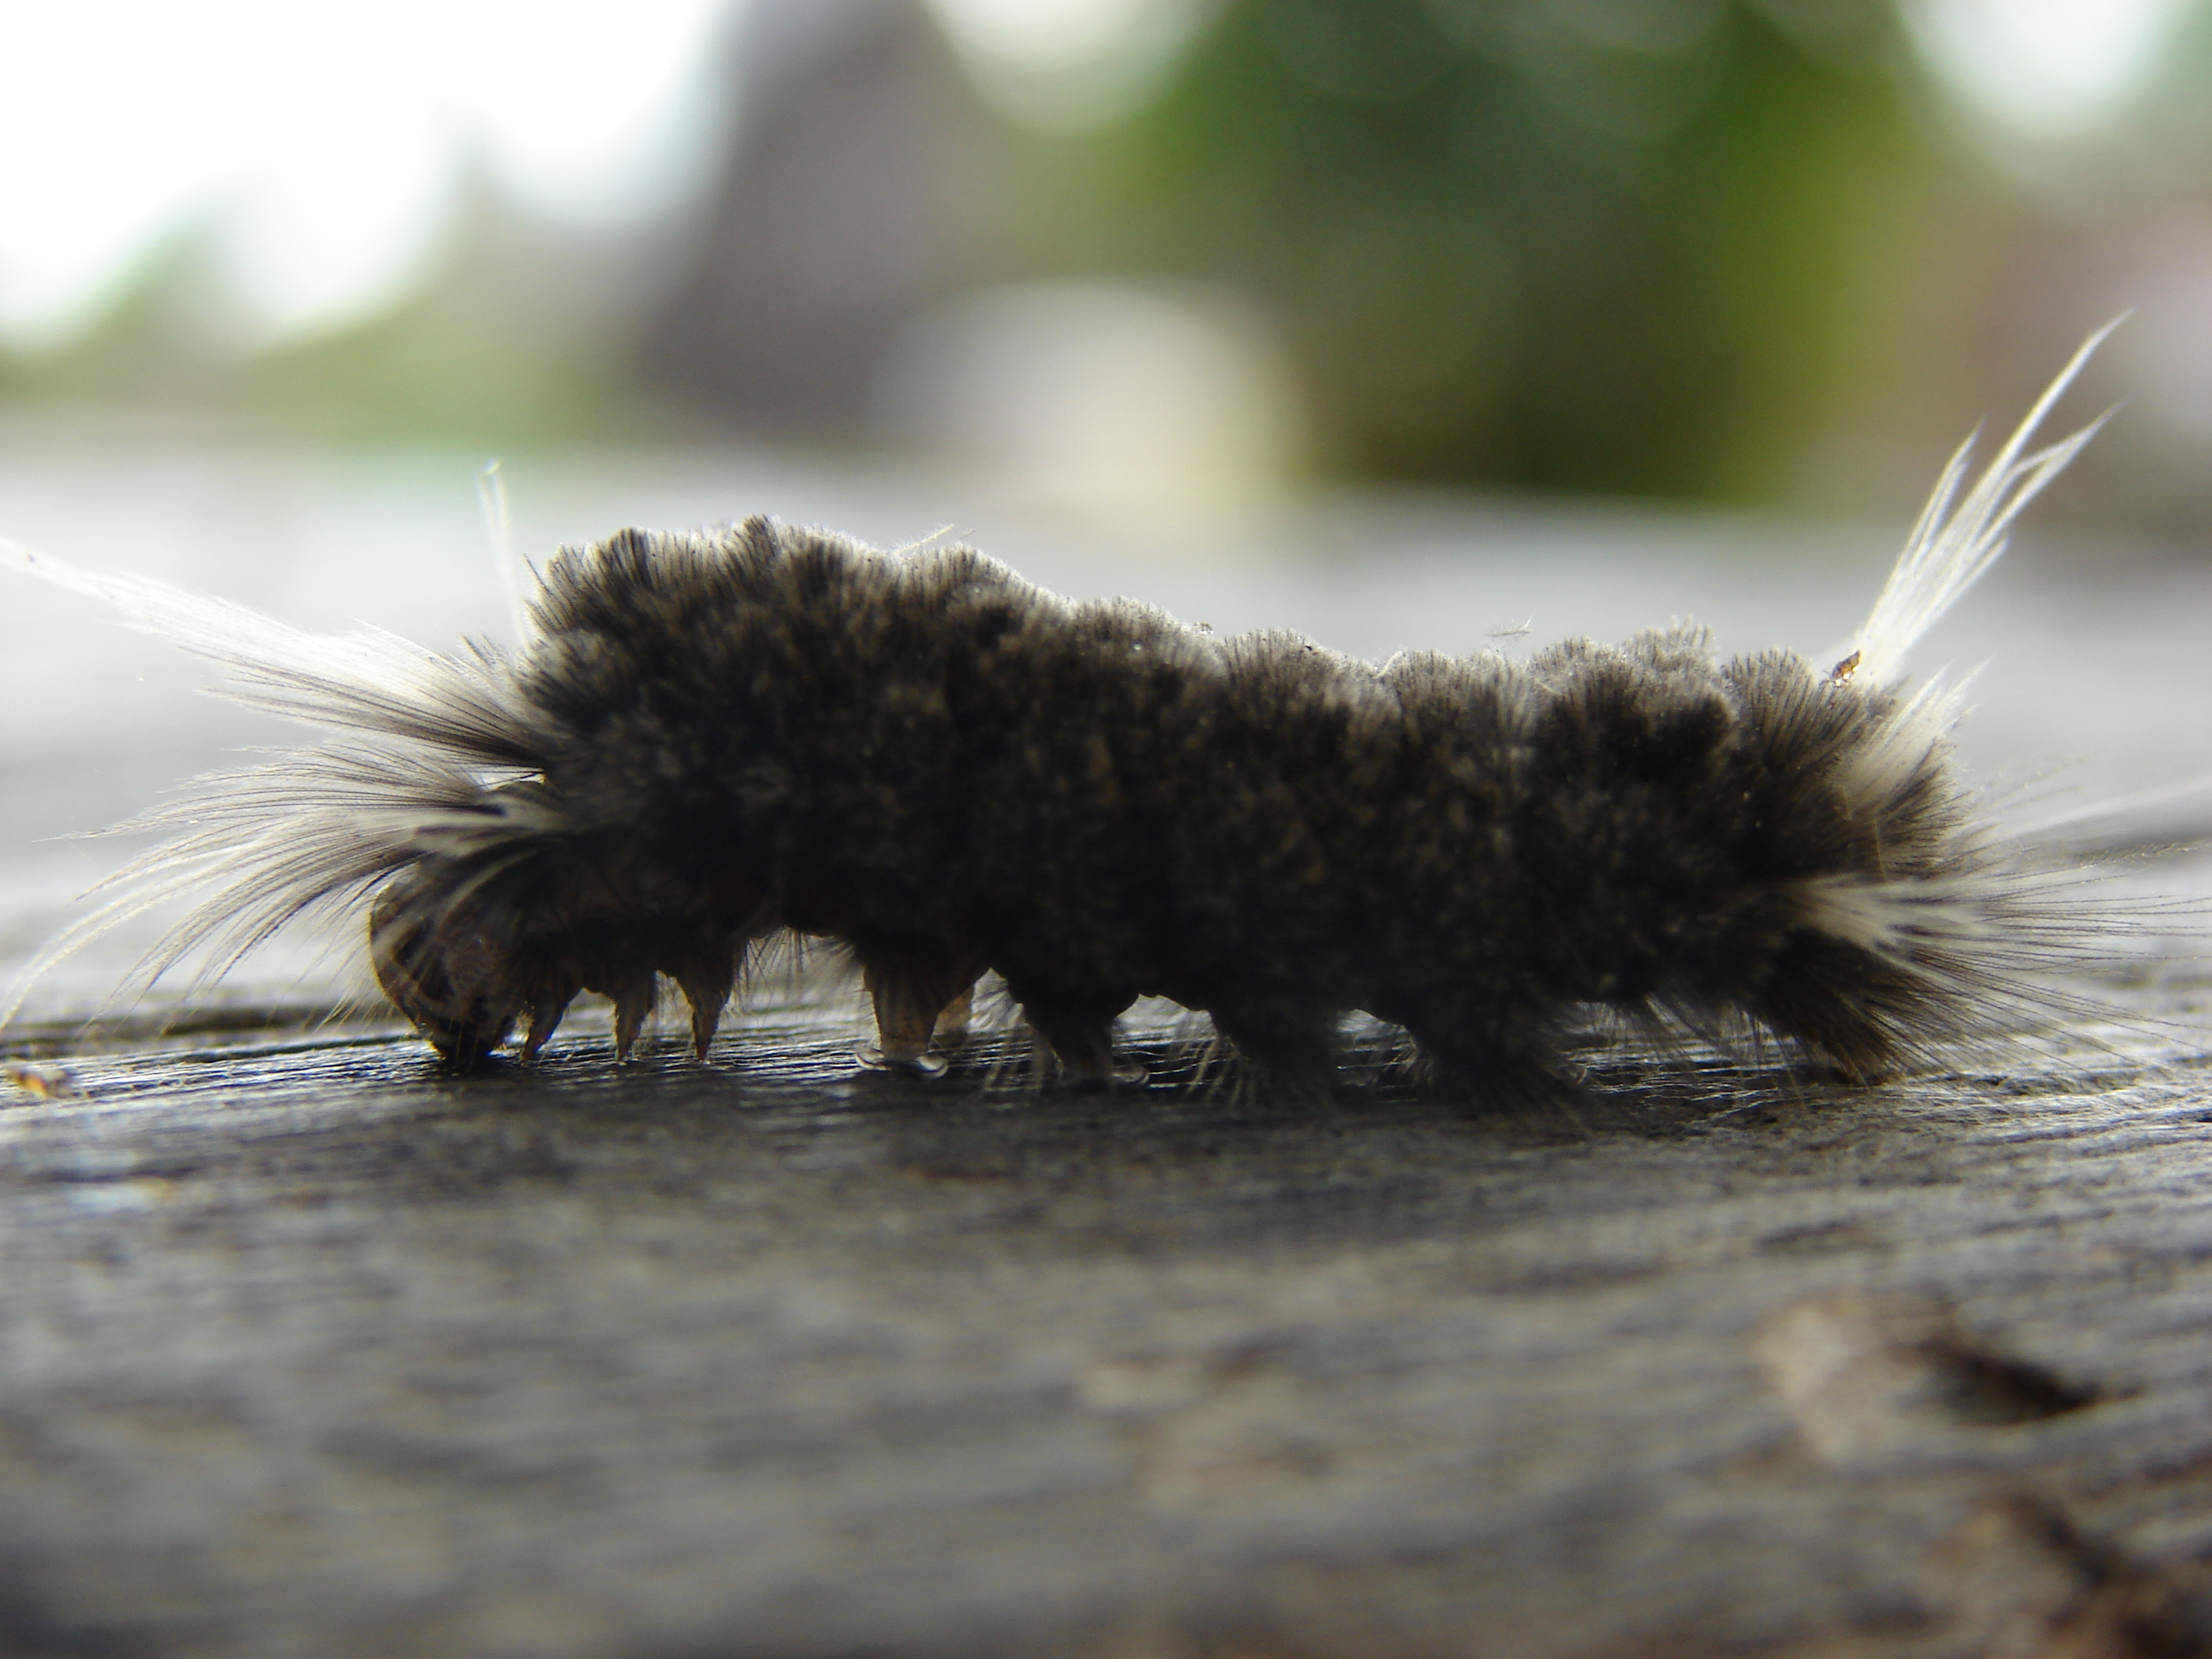 Hairy caterpillar photo